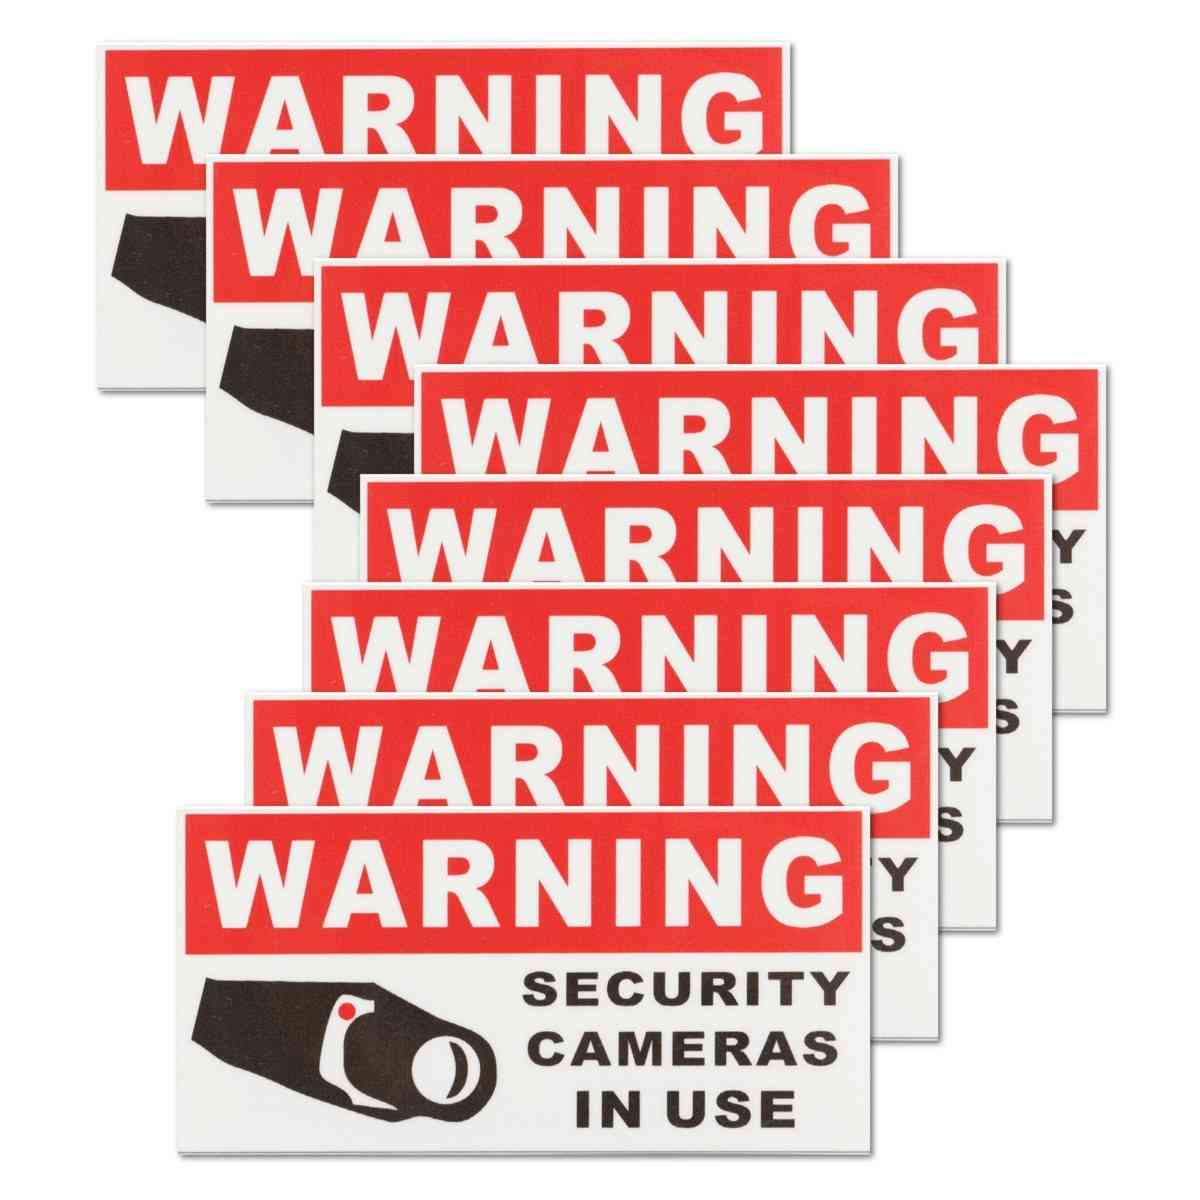 Sikkerhedskamera i brug vandtætte, selvklæbende advarselsmærkater